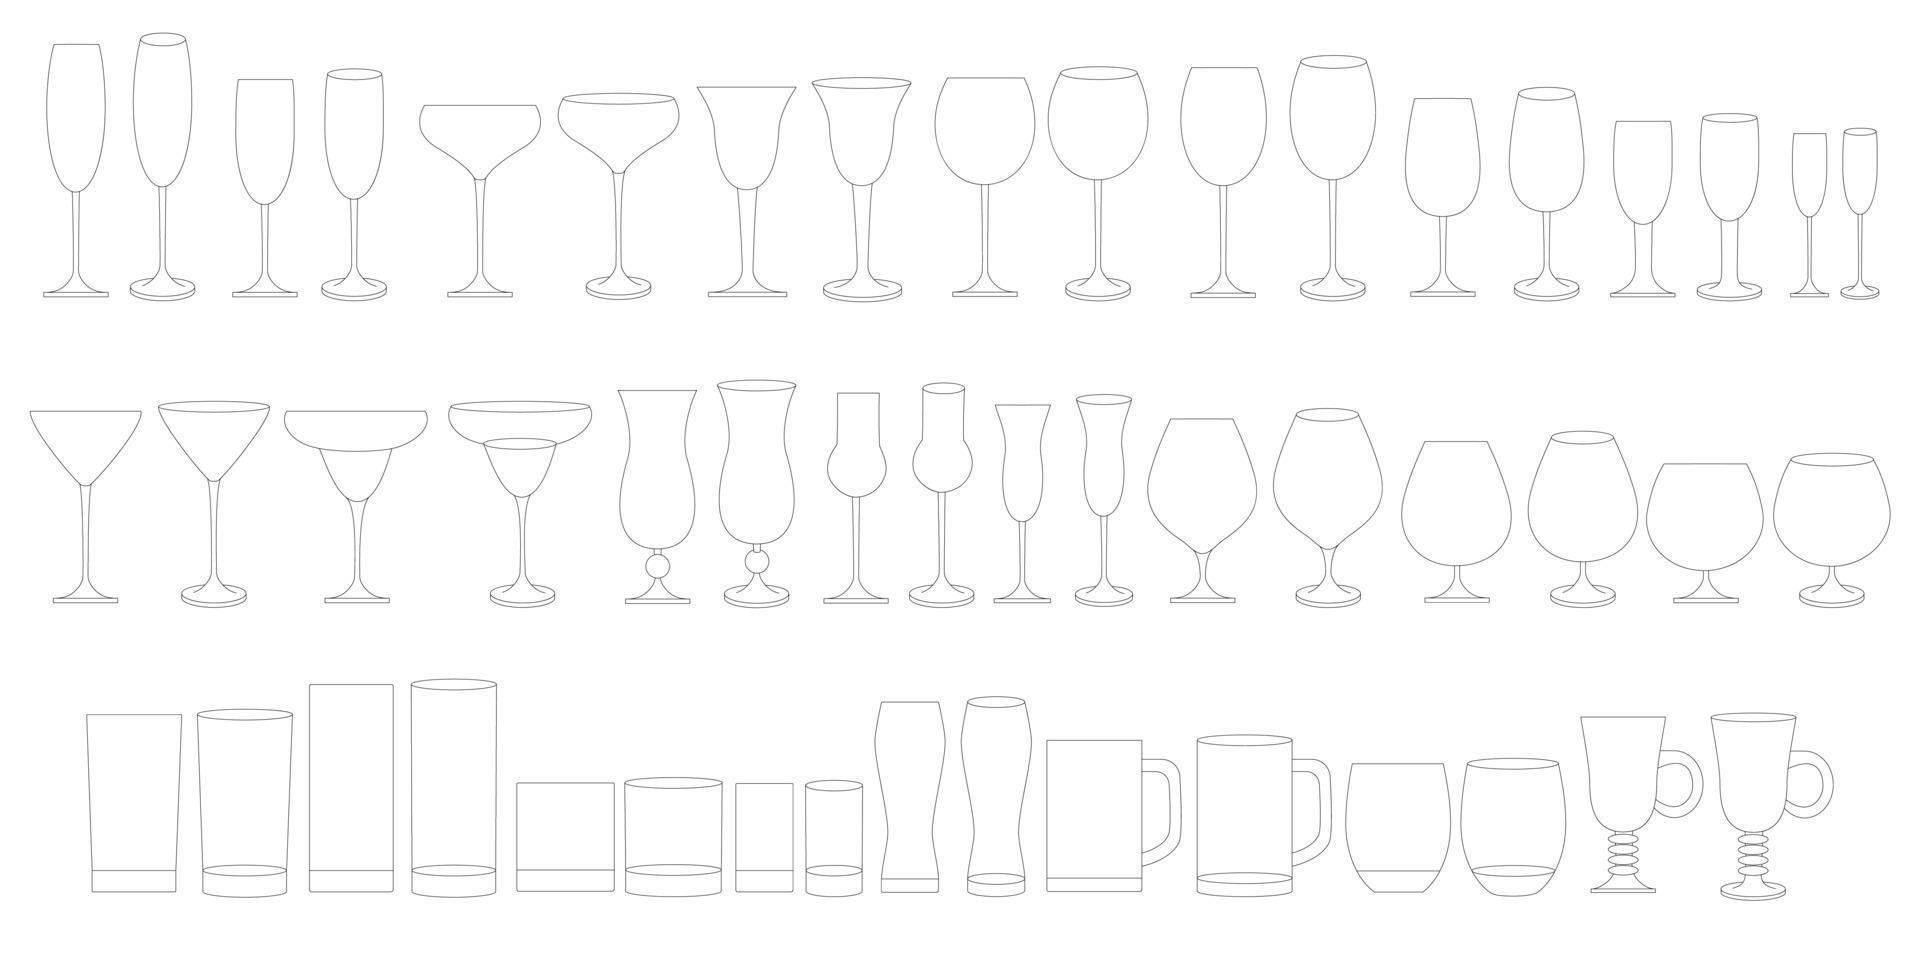 copas para vino, champán, whisky, coñac. tipos de vasos para bebidas alcohólicas y no alcohólicas. vector